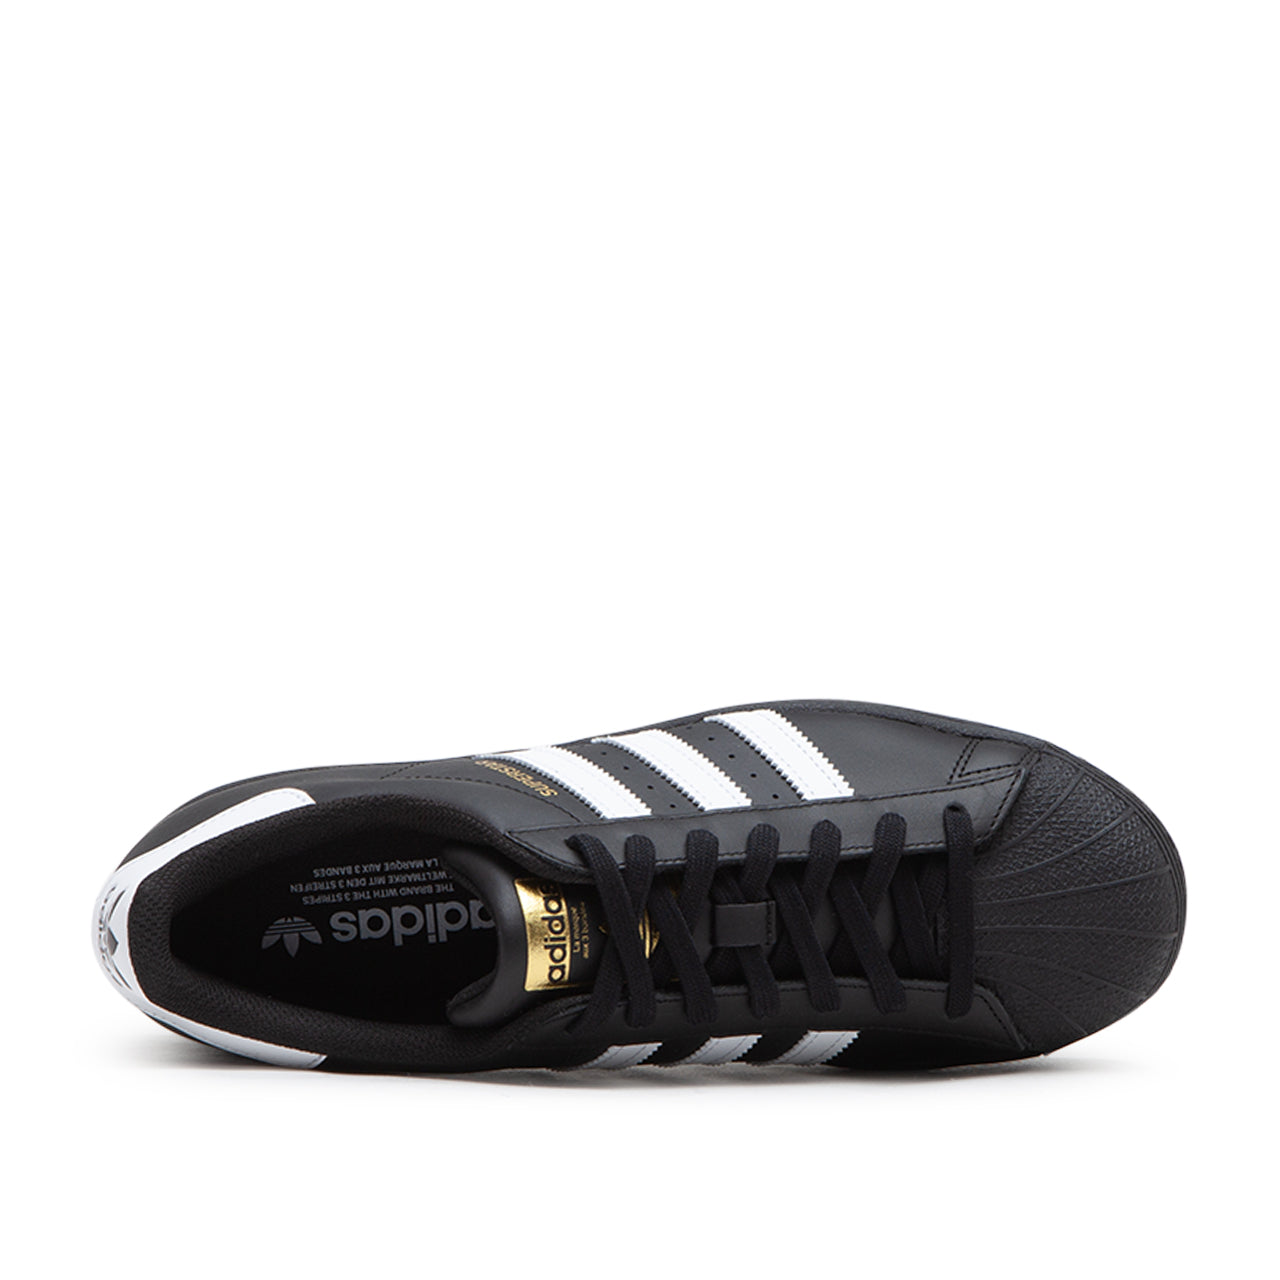 adidas Superstar (Black White) EG4959 - Allike Store